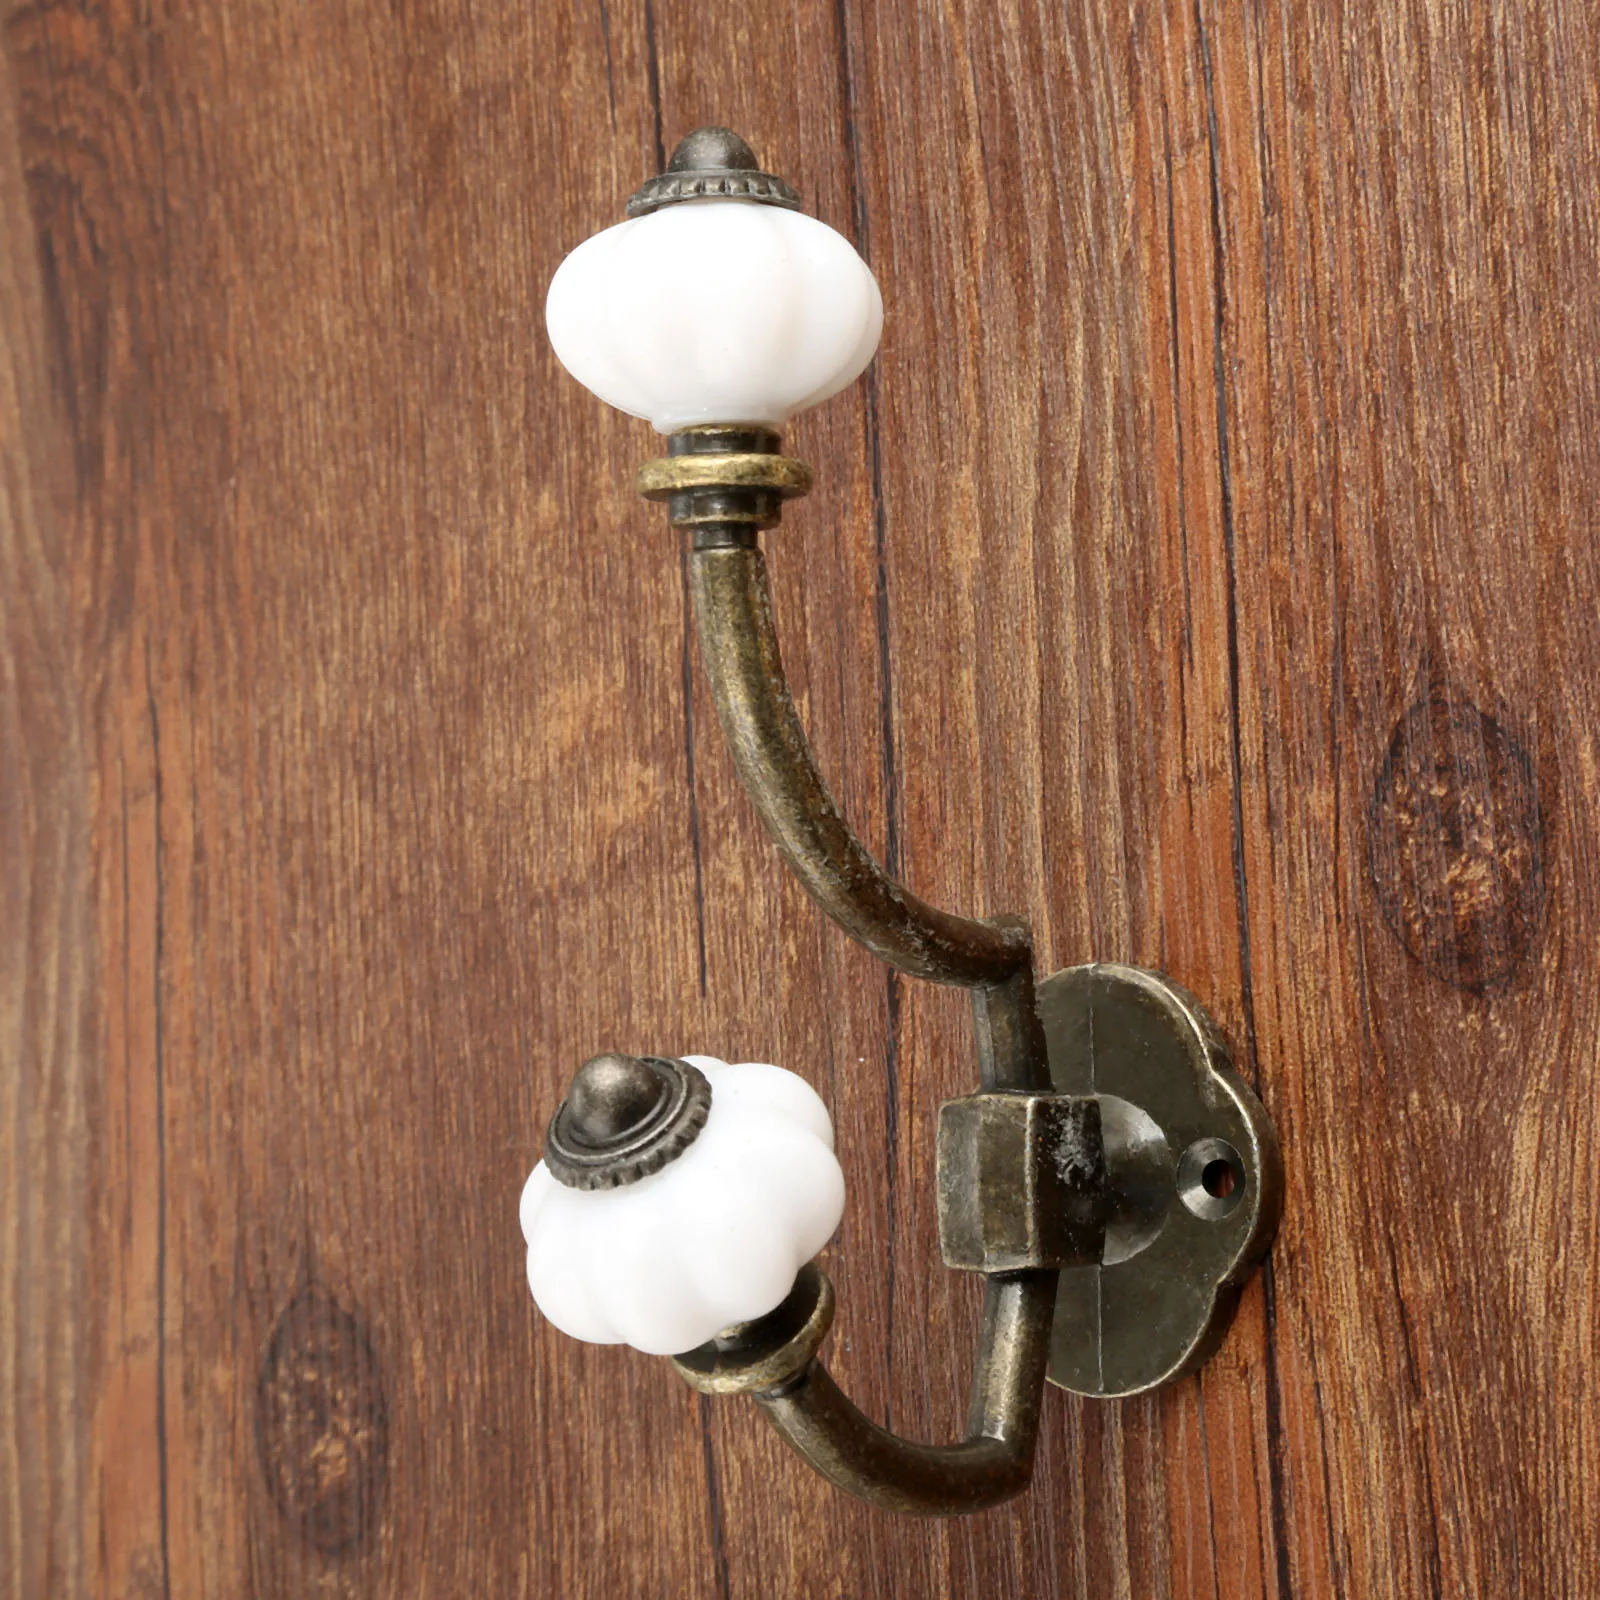 1Pc Antique Bronze Door Hanger Hooks Bathroom Wall Hanger Hats Bag Keychain Alloy Hook Coat Wall Hooks with Screws 125*95mm